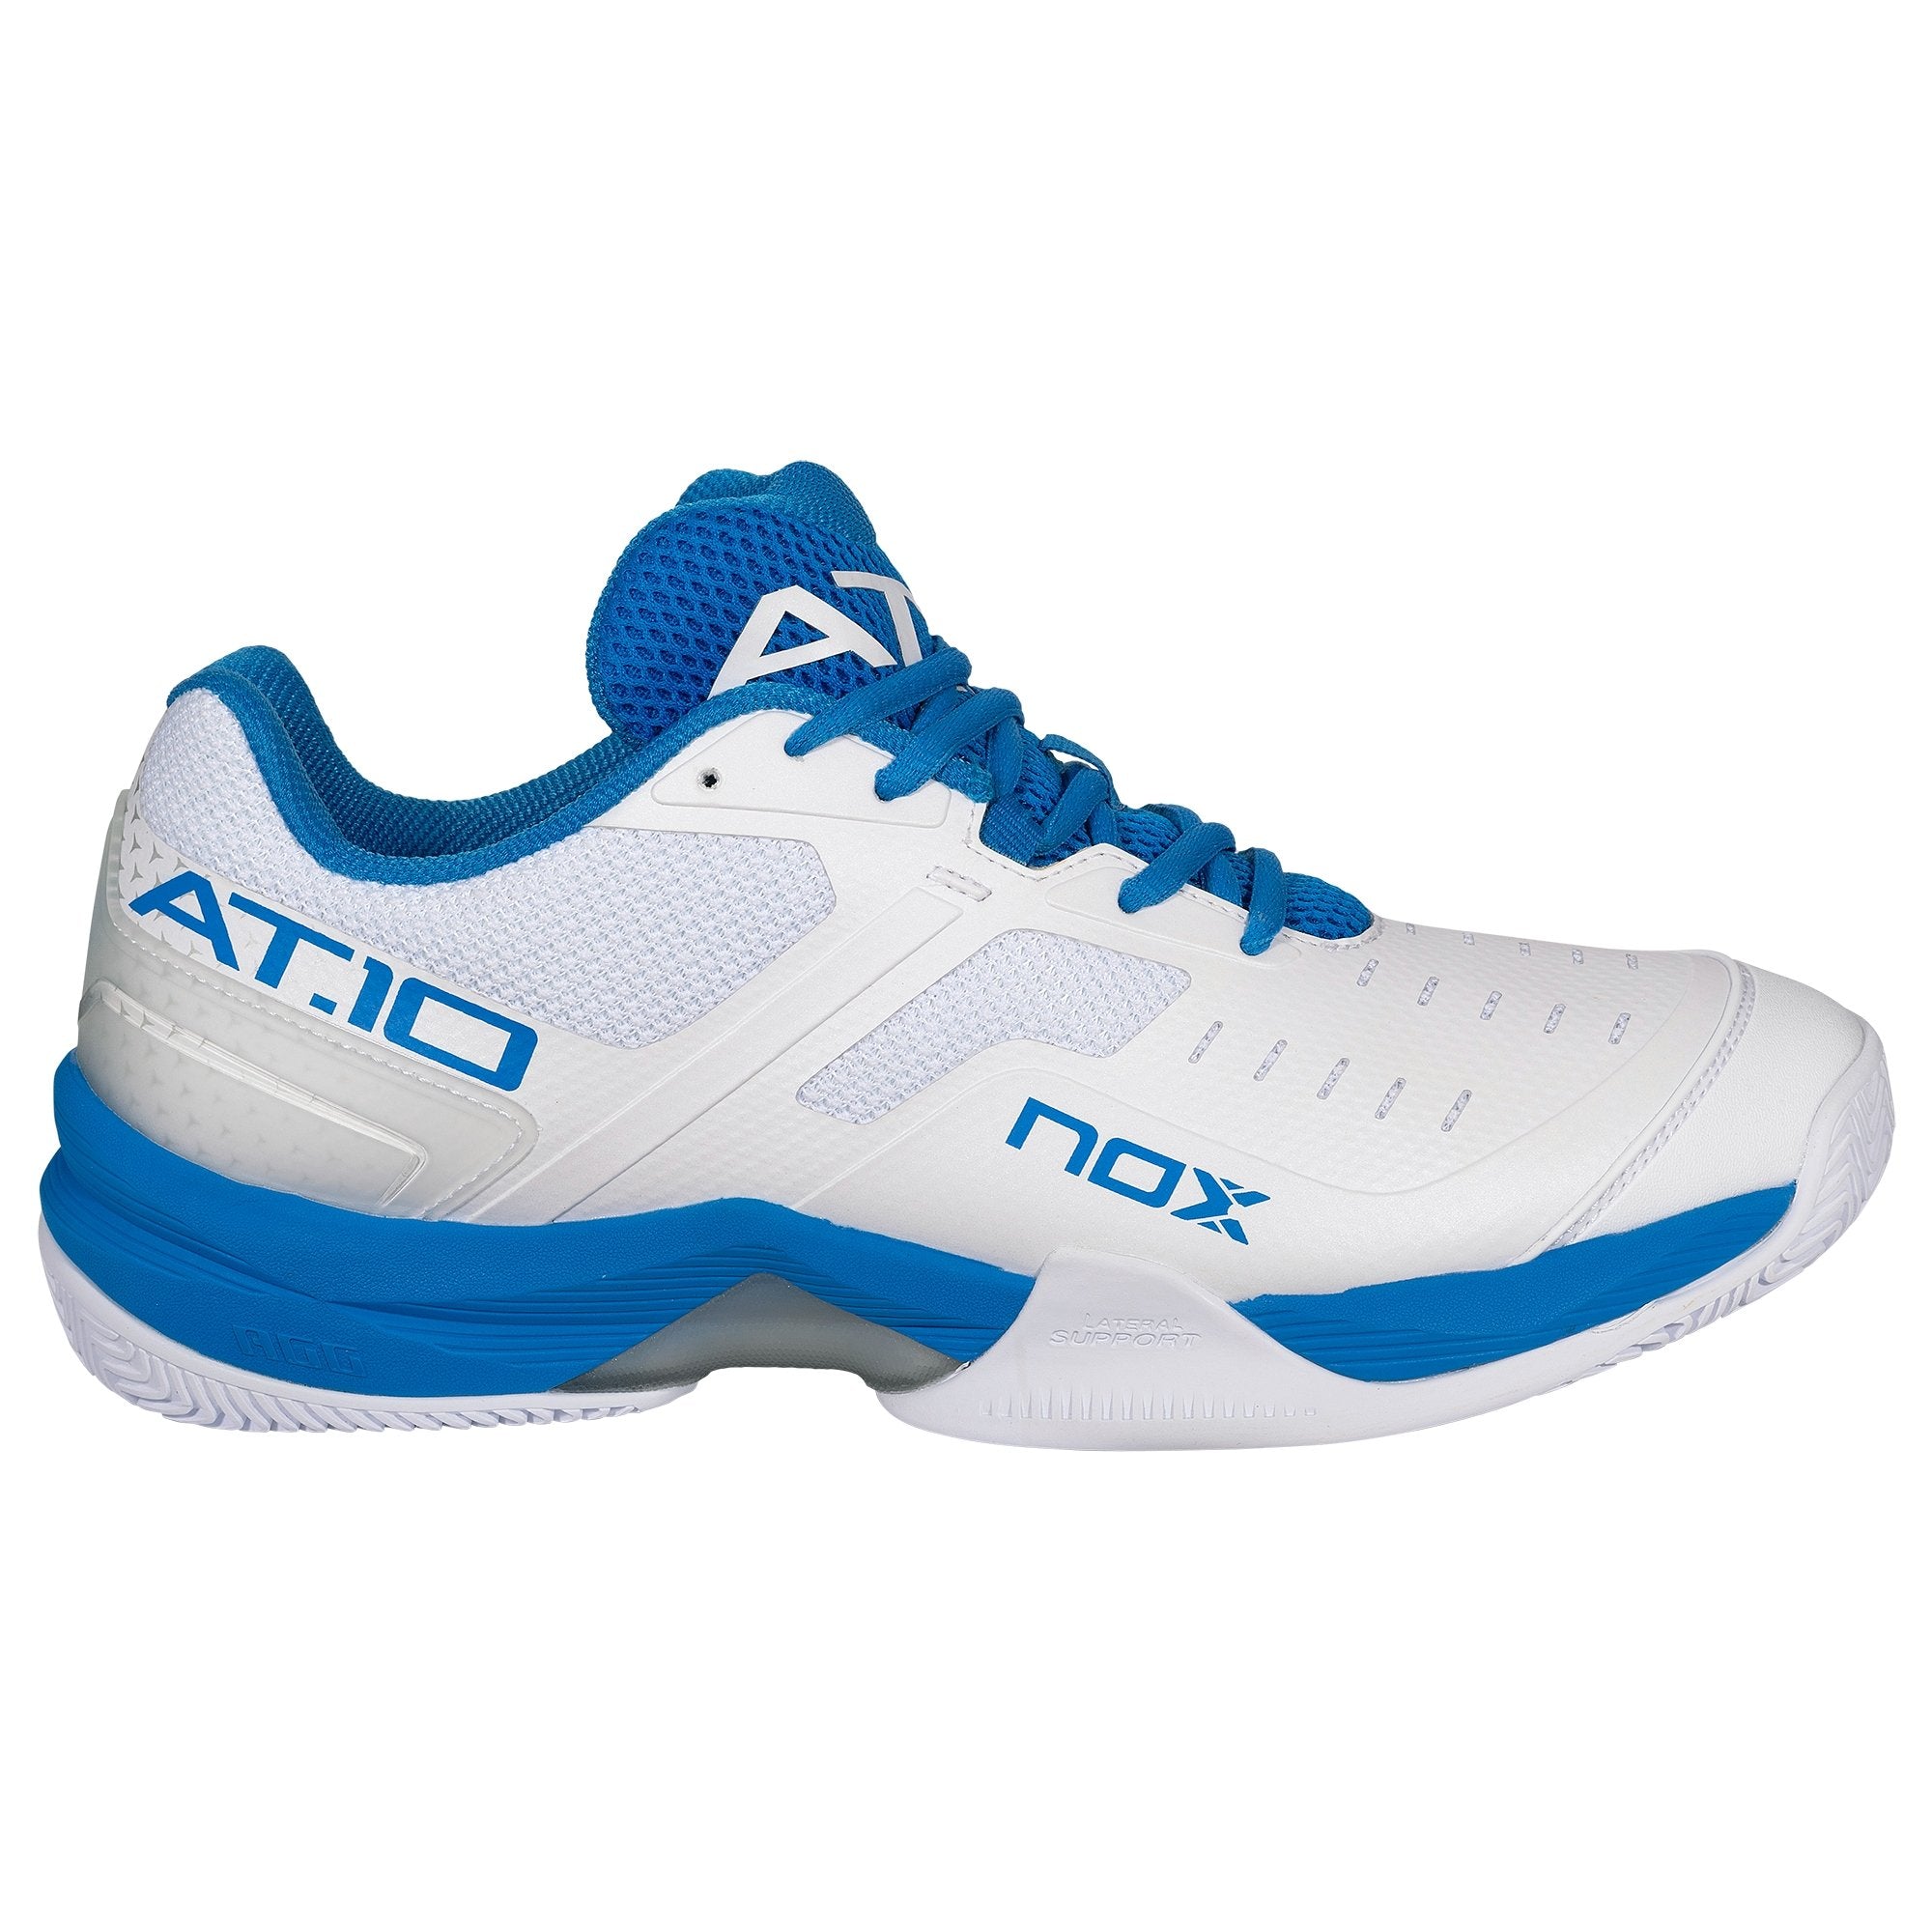 Zapatillas De Pádel Nox At10 - blanco-azul - 